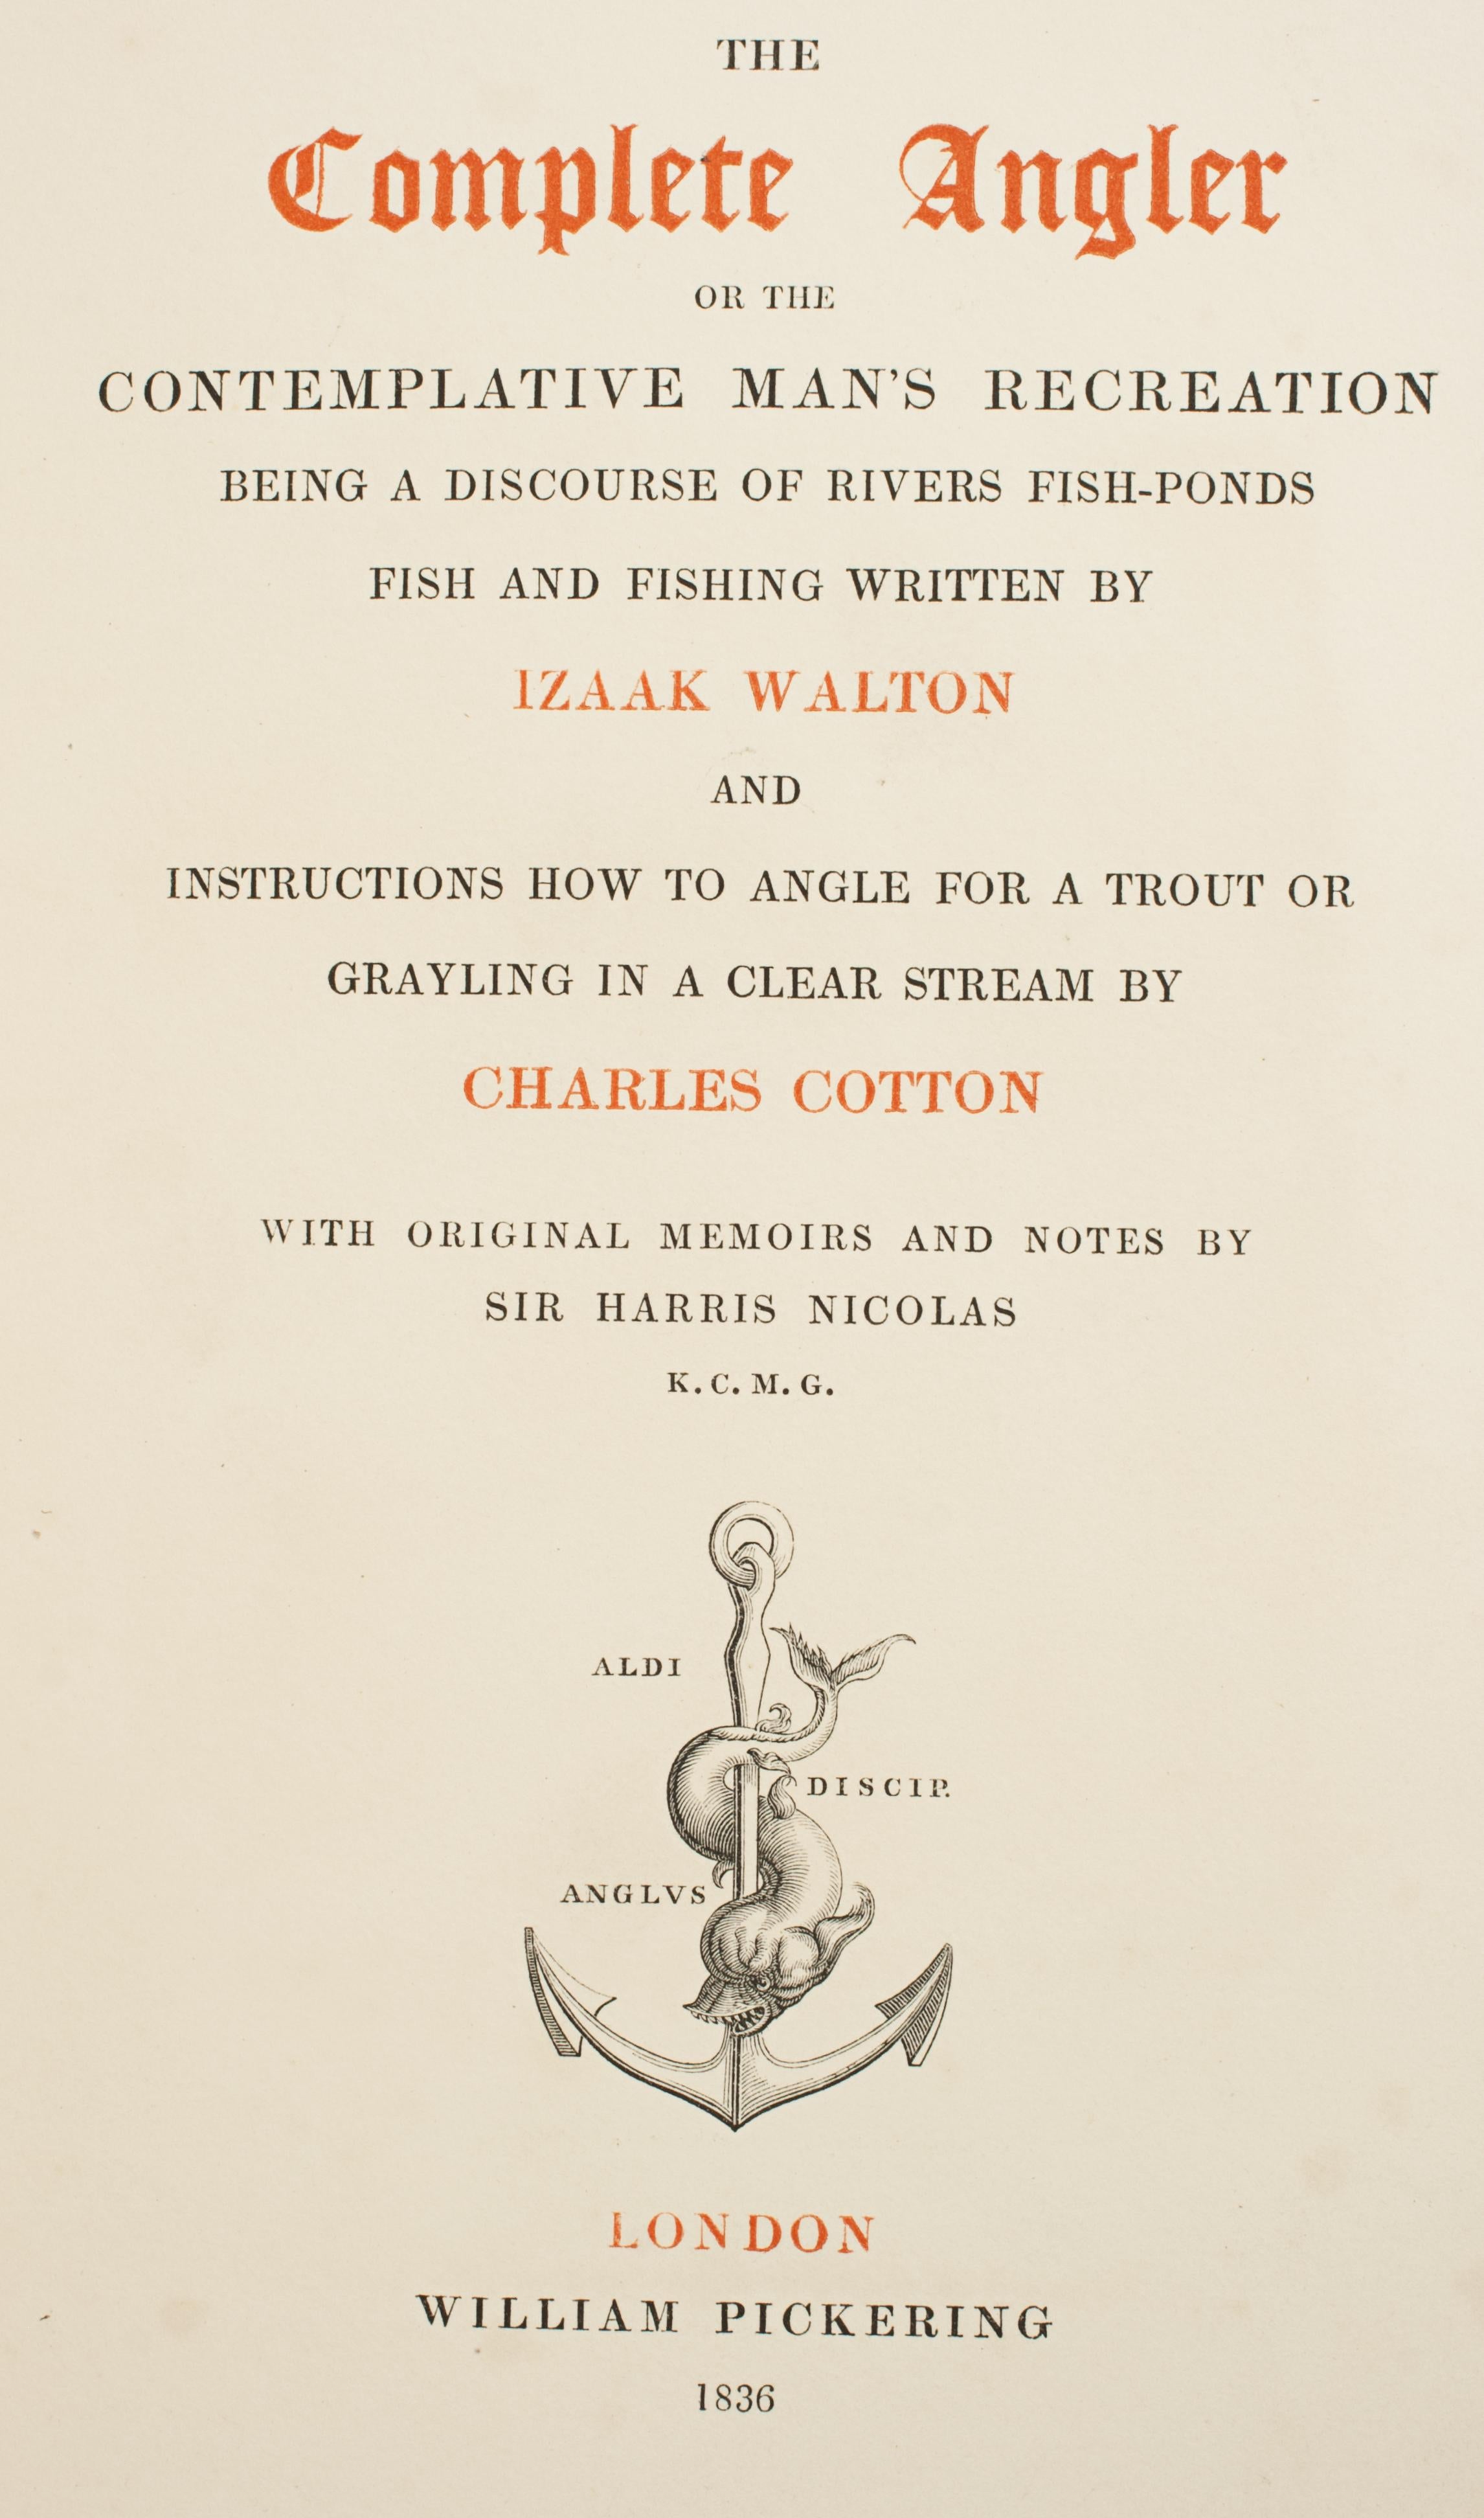 Complete Angler von Izaak Walton, Fischerbuch des 19. Jahrhunderts, zwei Bände (Geprägt)